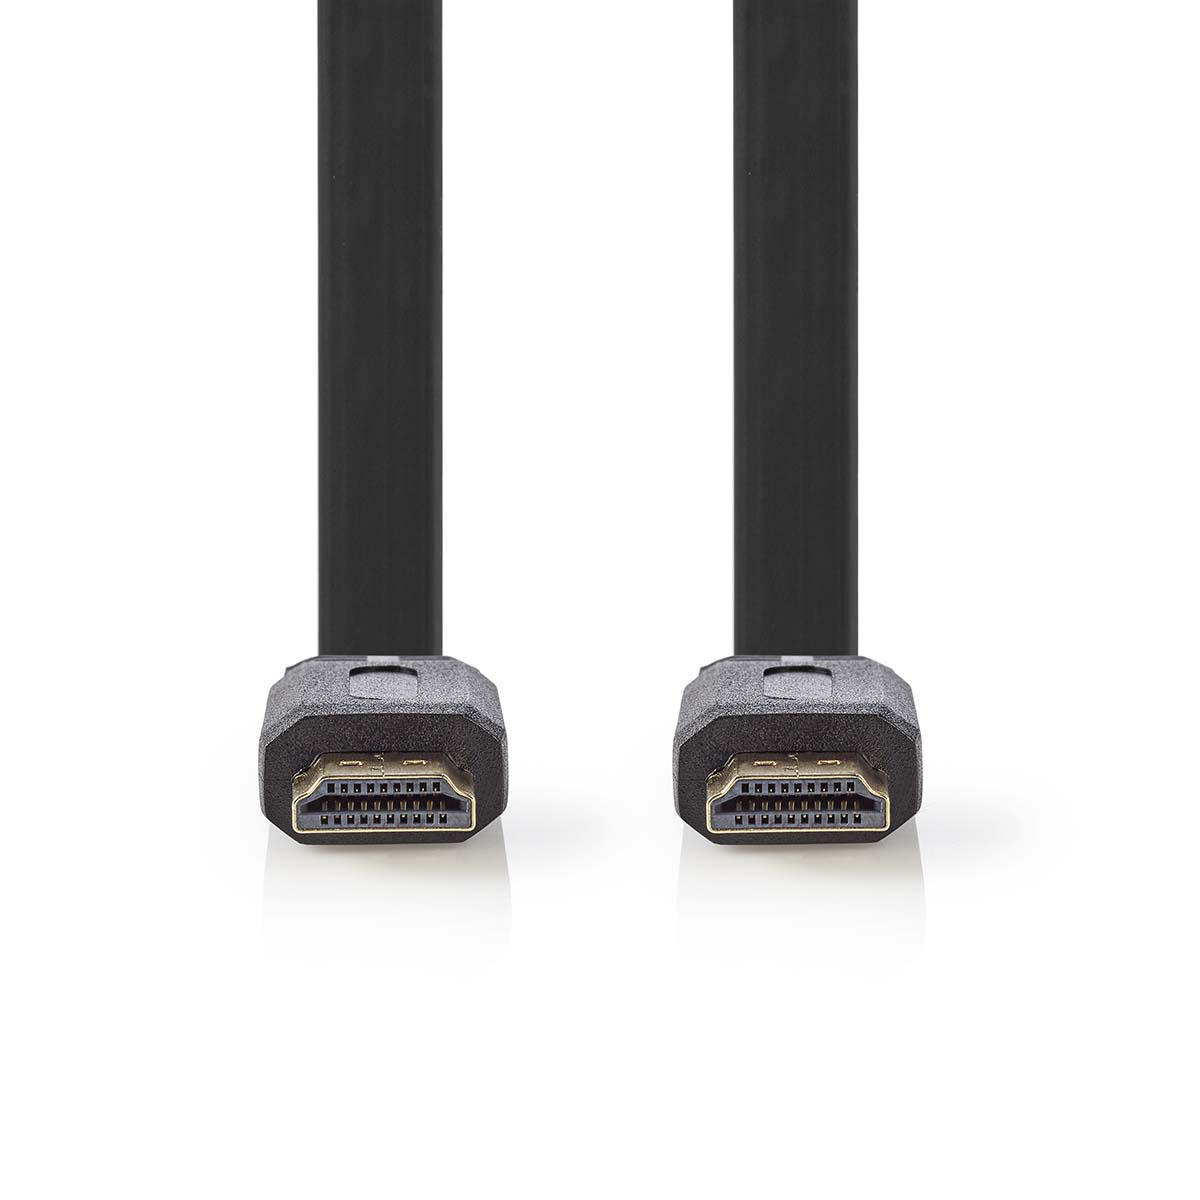 Nedis High Speed HDMI™ plochý kabel zástrčka HDMI - zástrčka HDMI, 5 m, černá (CVGP34100BK50)